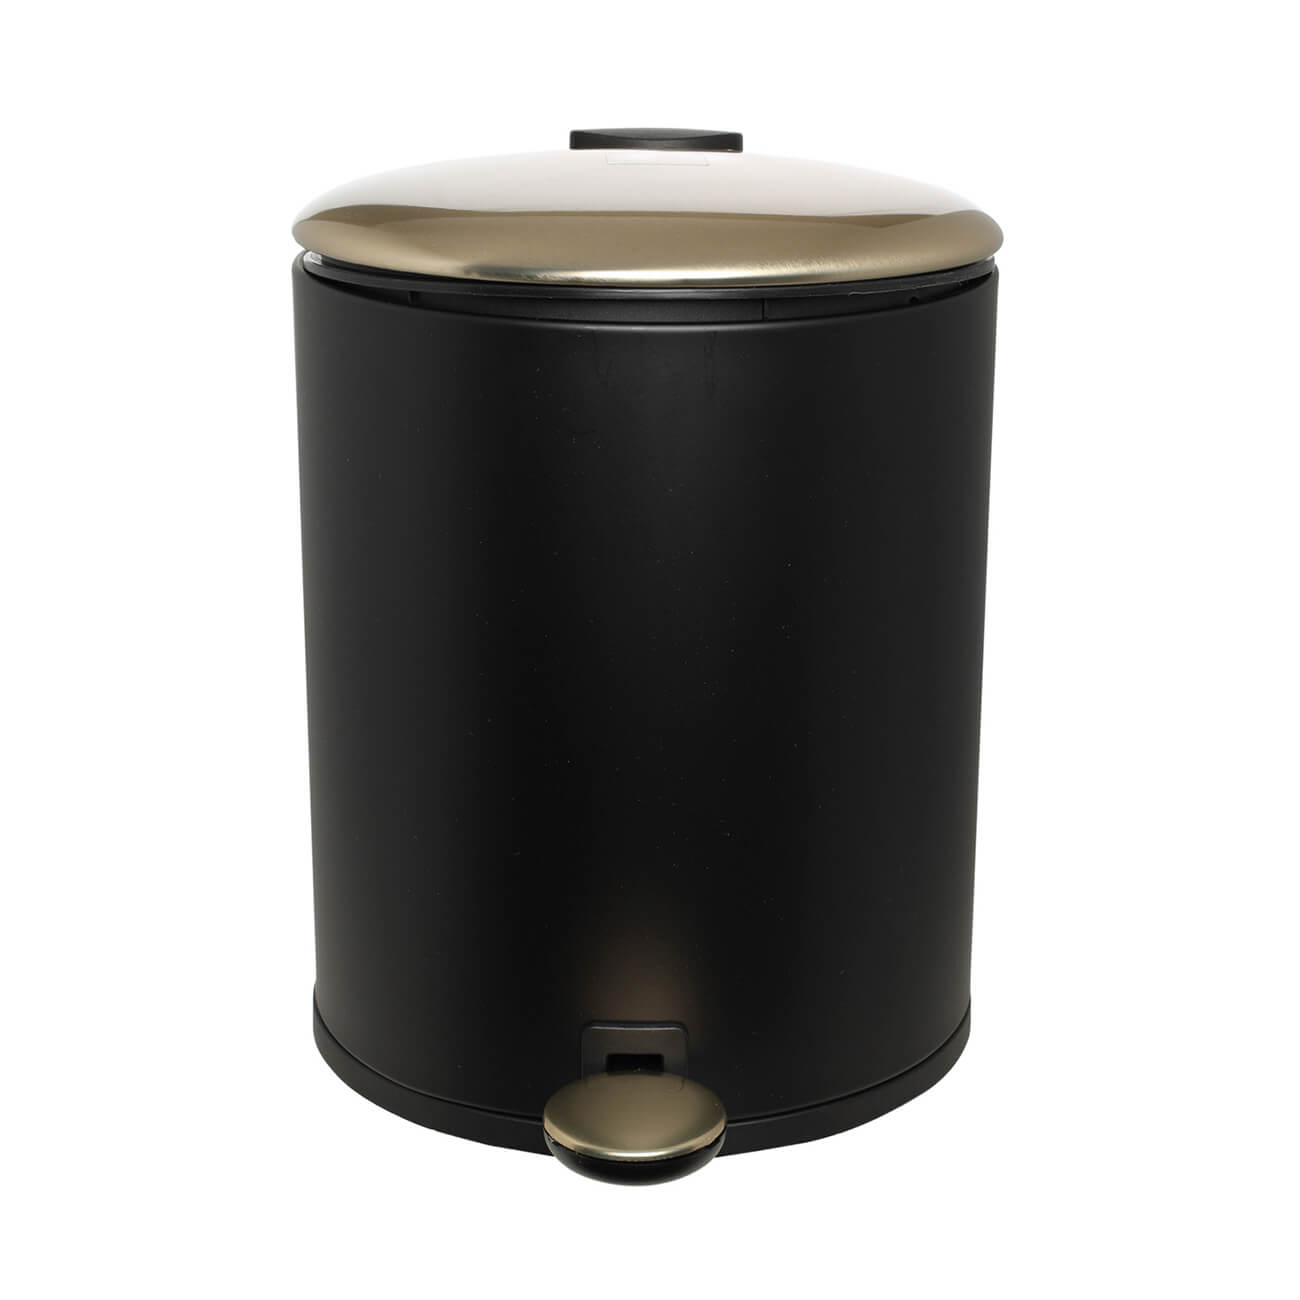 Емкость для мусора, 5 л, с педалью, металл, черно-золотистое, Black chic емкость для охлаждения напитков zeller 800мл